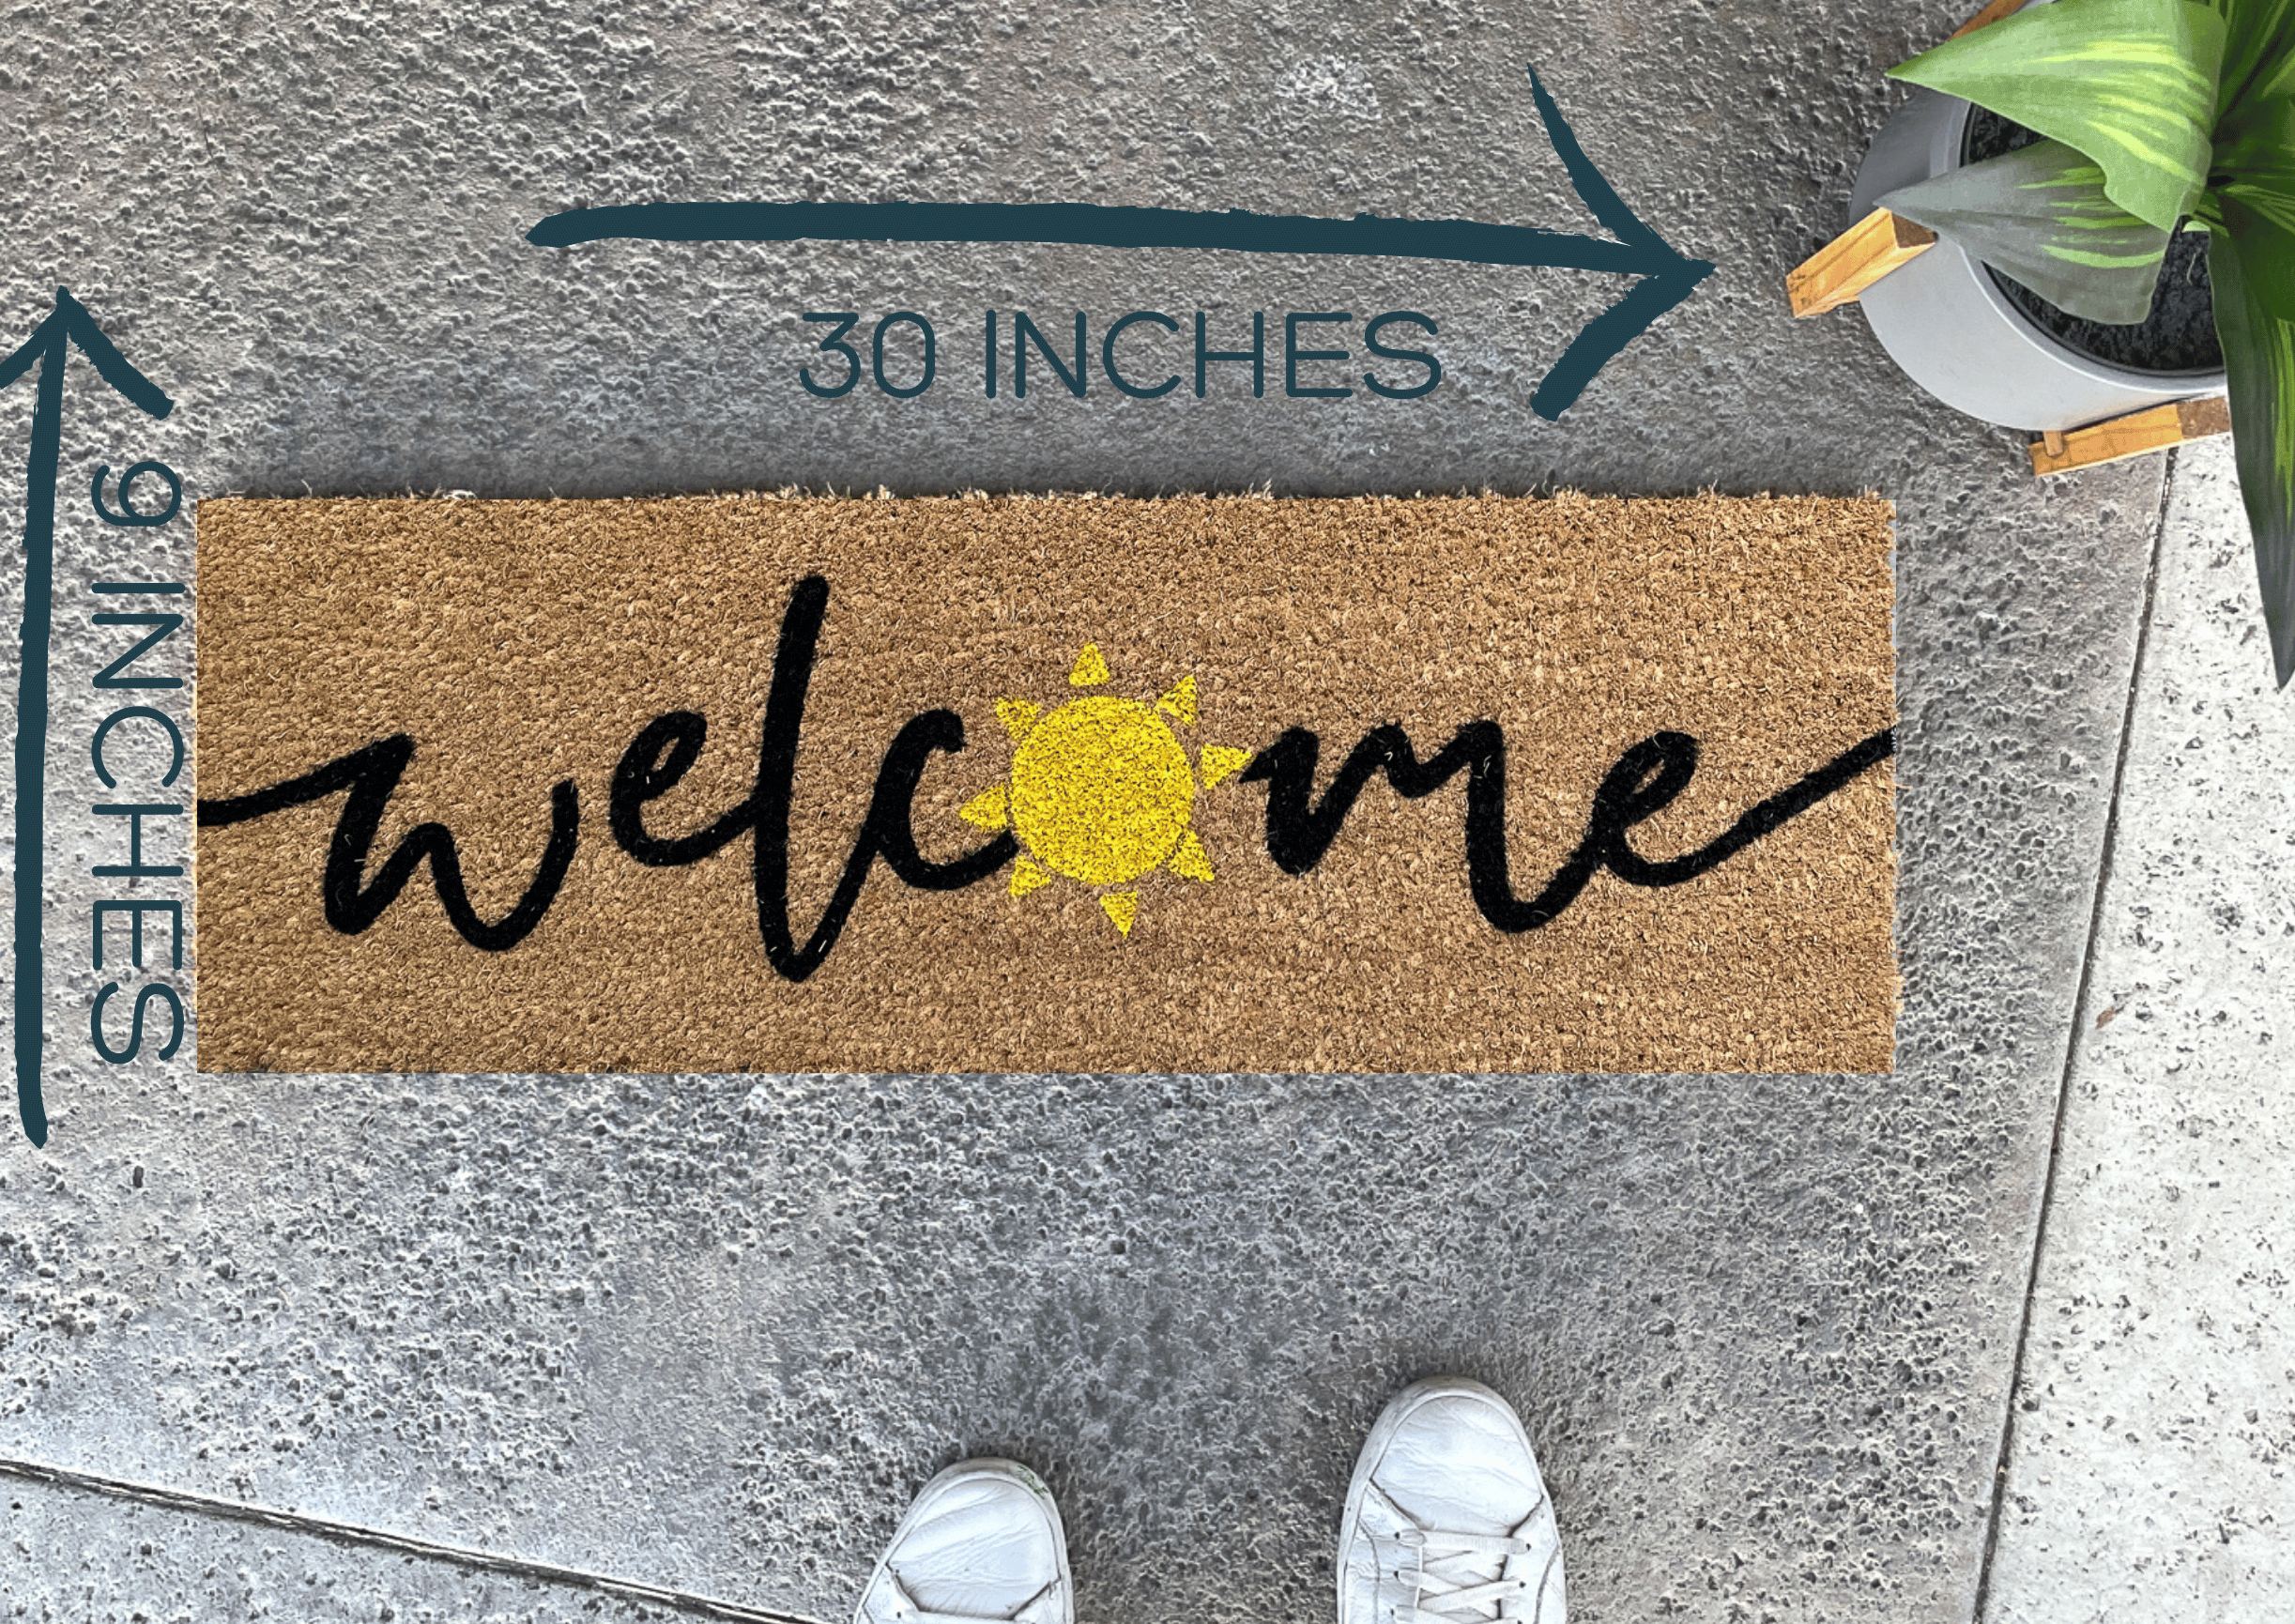 Welcome Sun Summer Doormat, Colorful Doormats